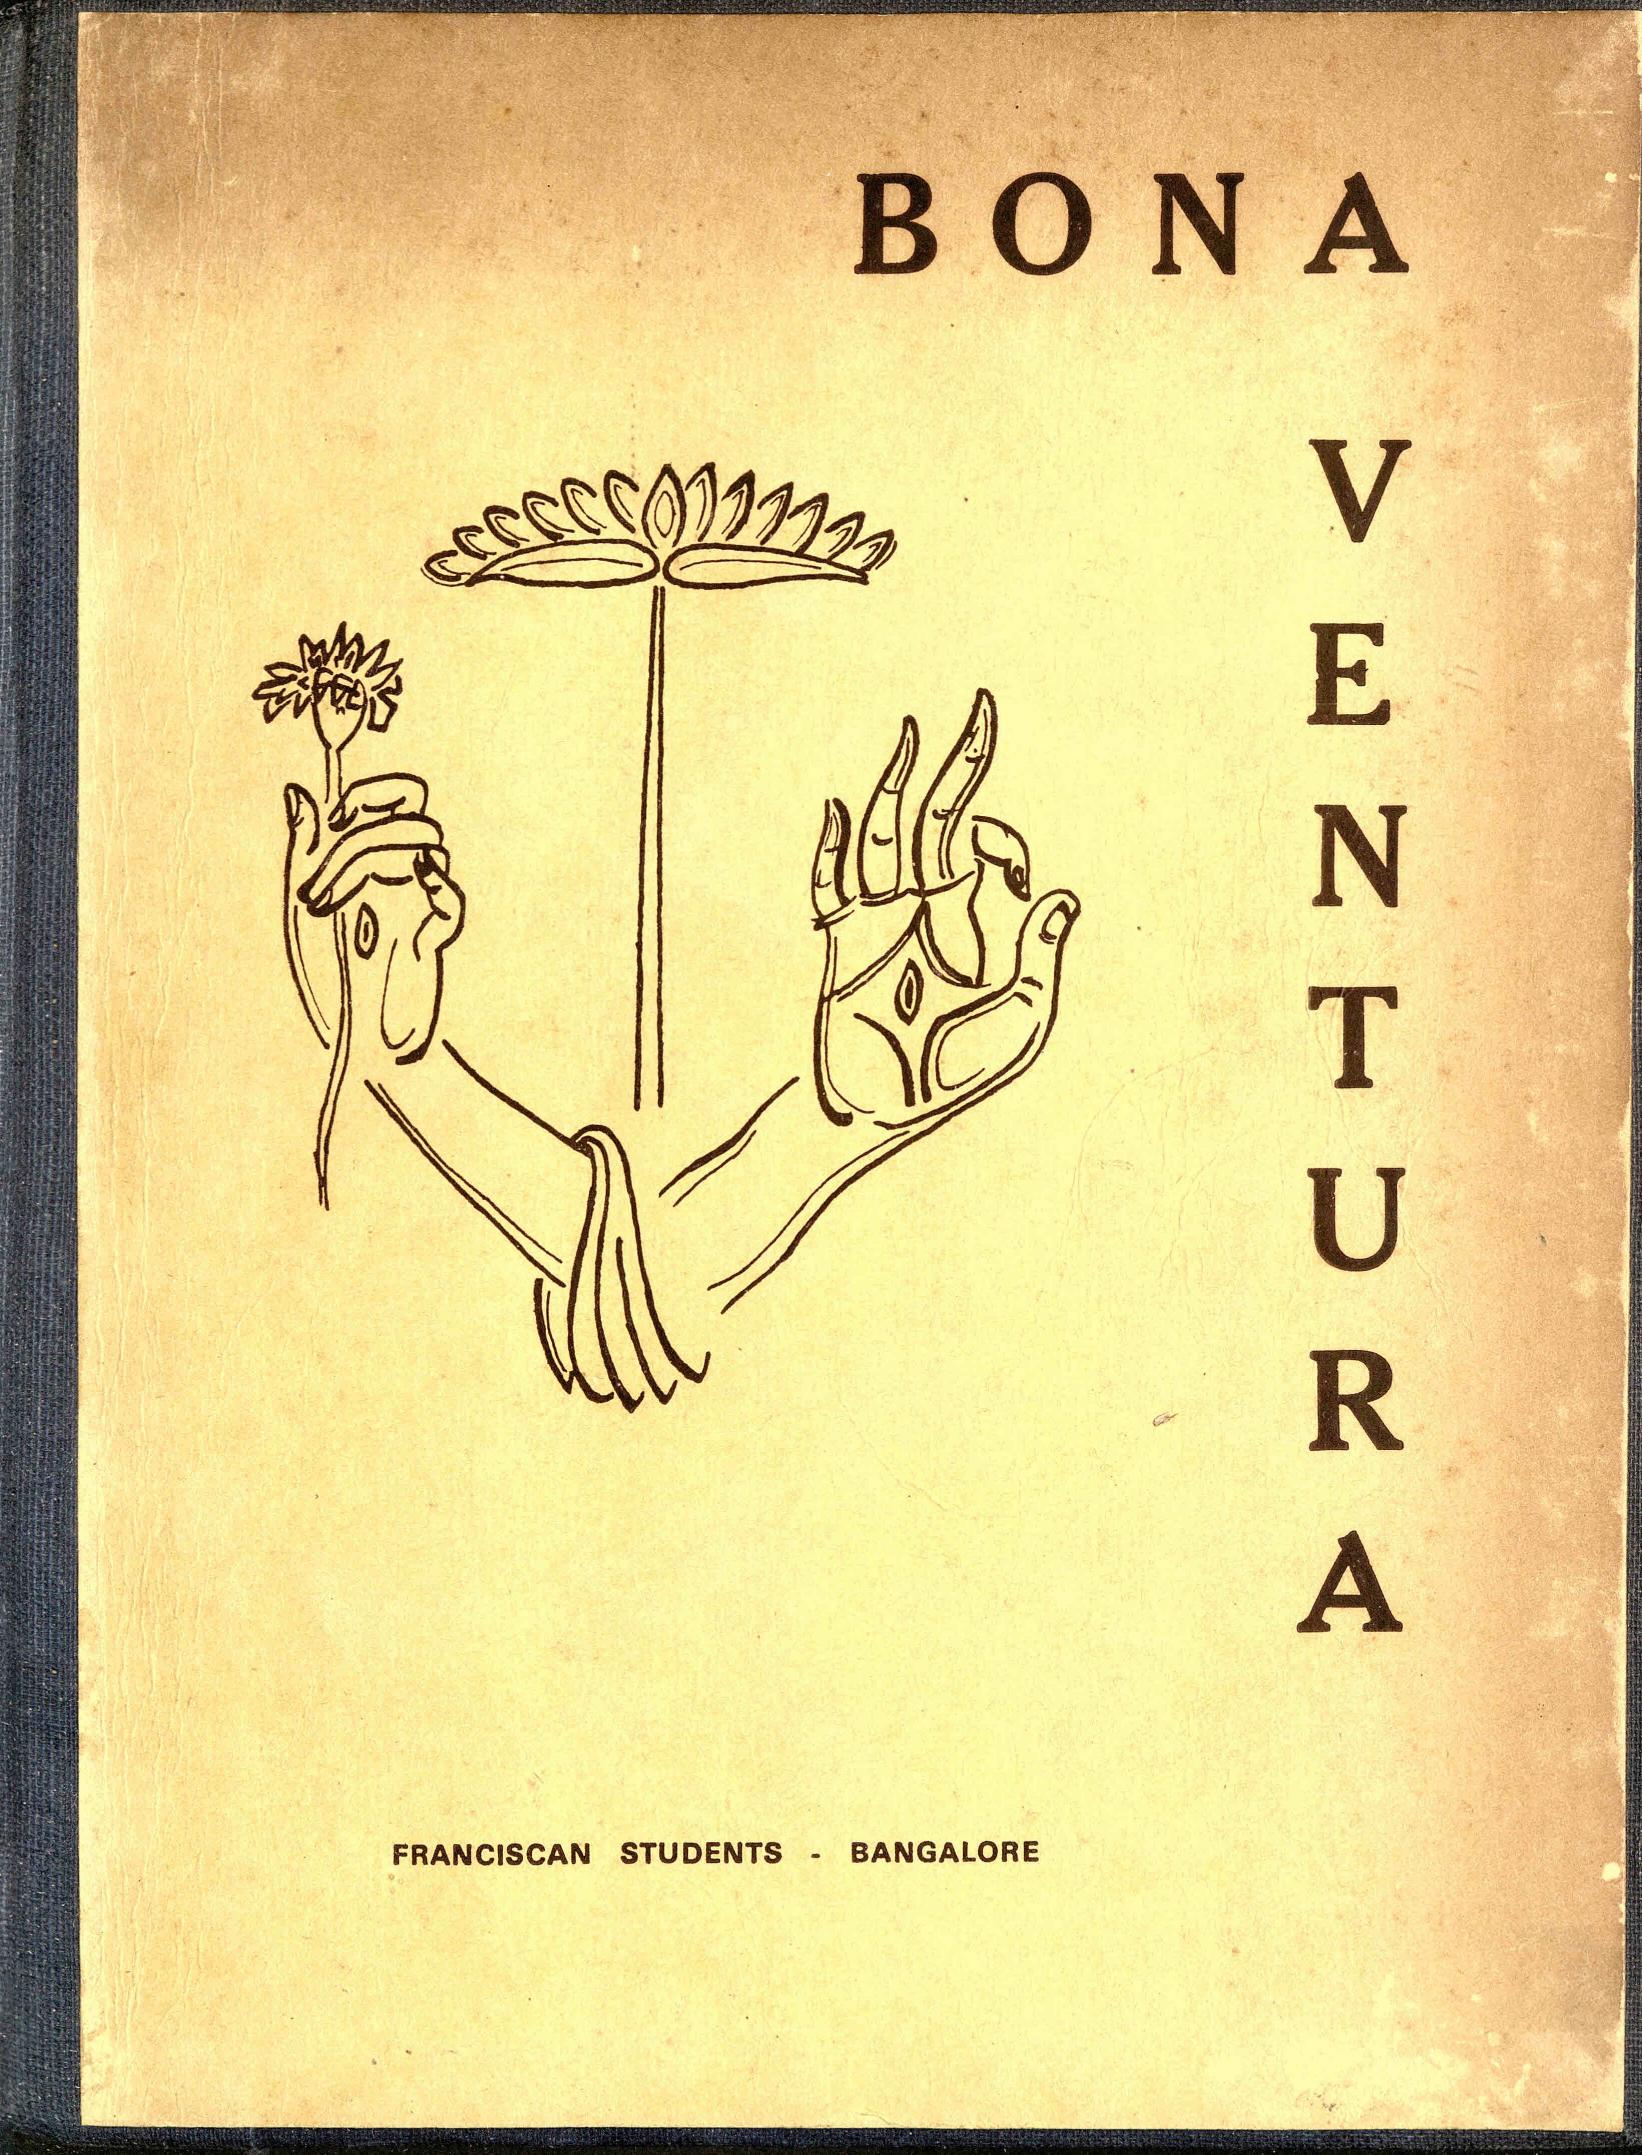  1973 - Bona Ventura - Franciscan Students Bangalore